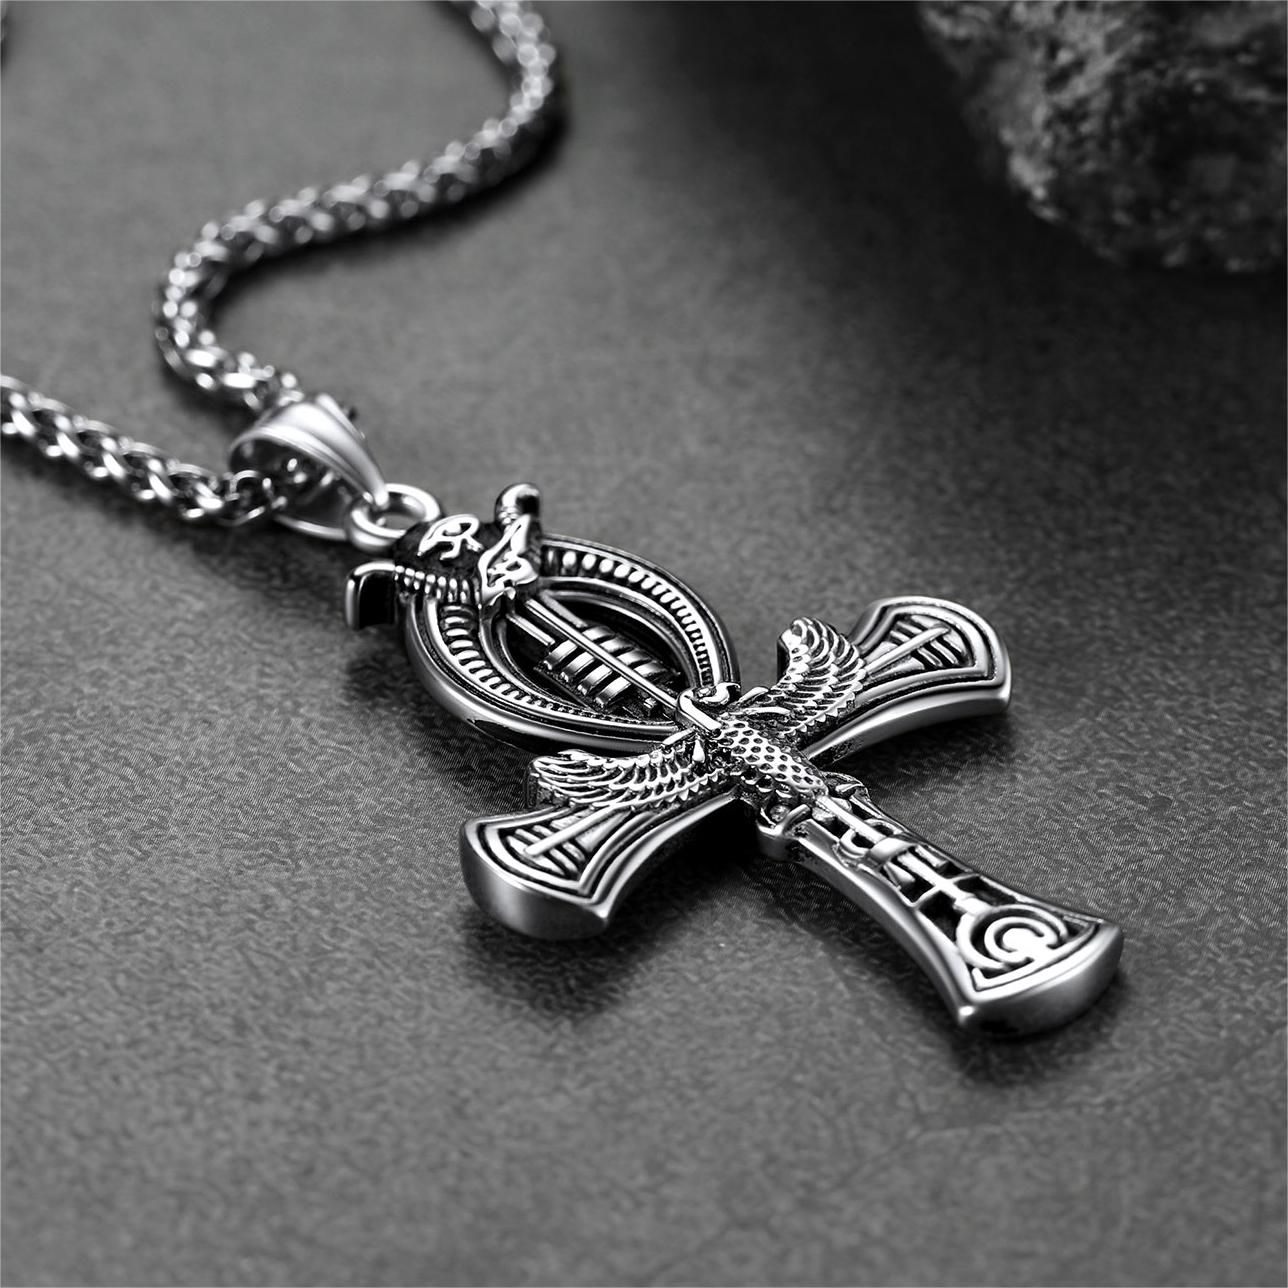 FaithHeart Egyptian Ankh Cross Necklace with Eagle For Men FaithHeart